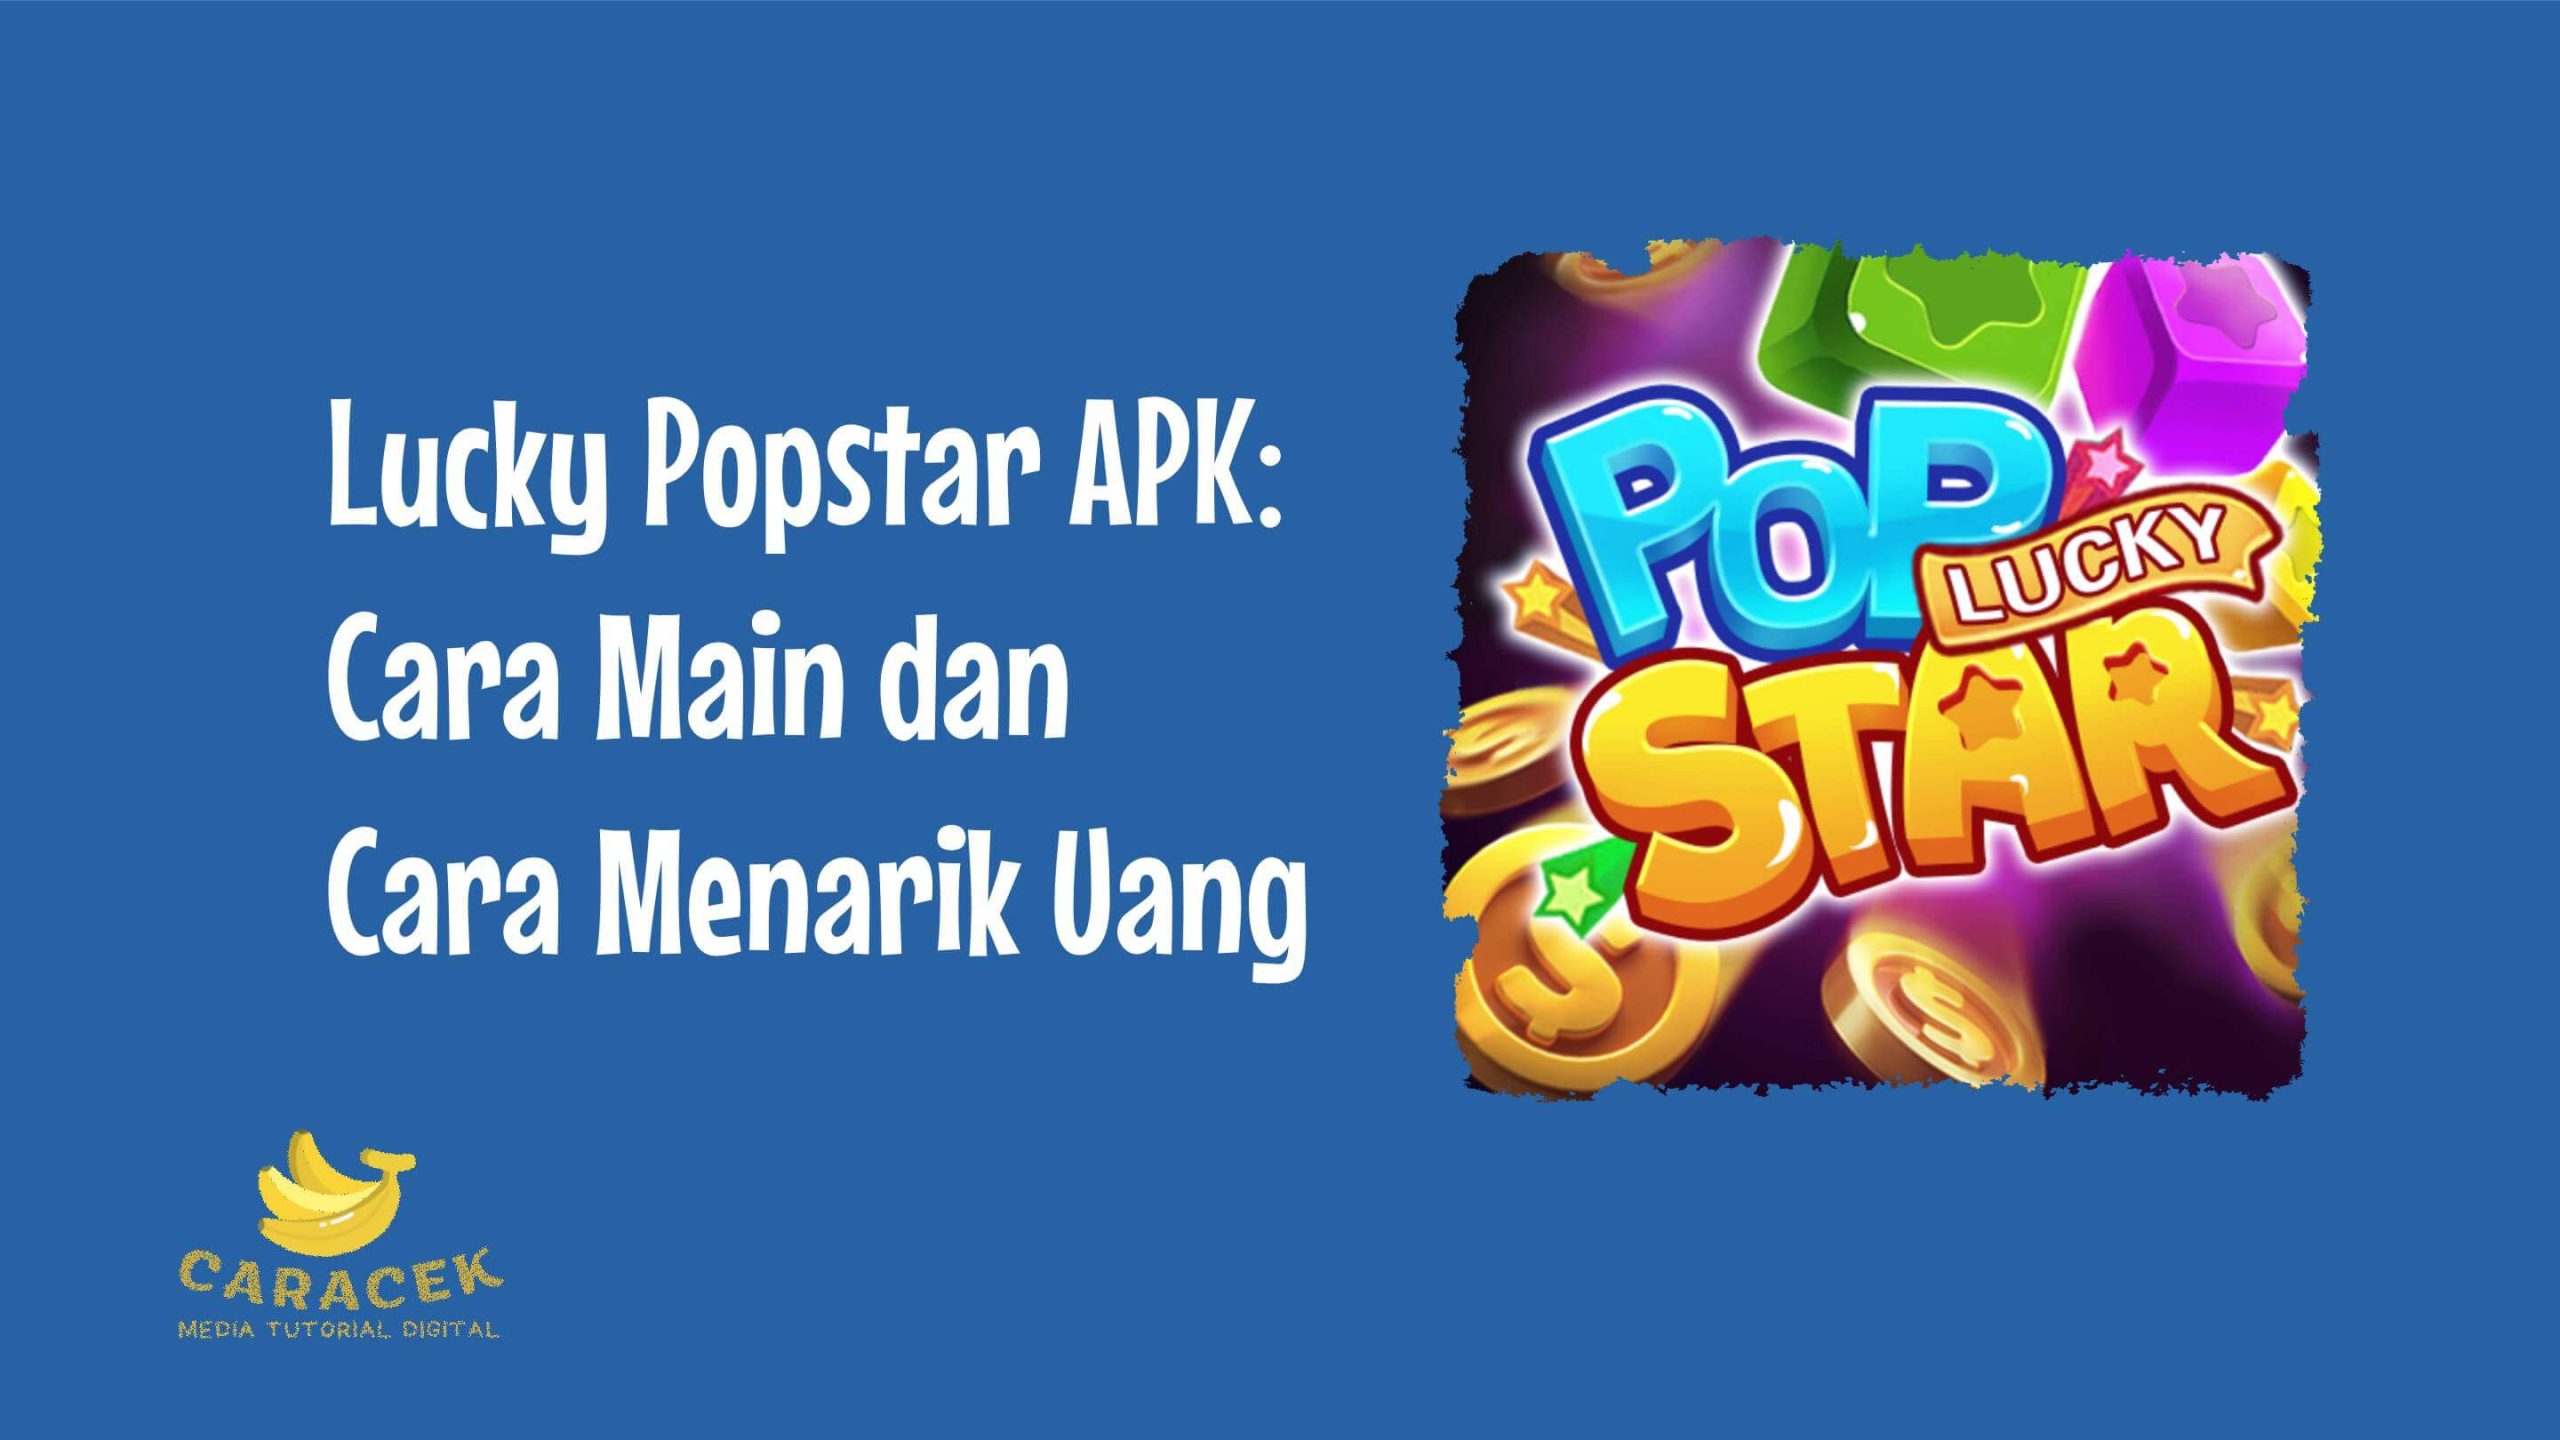 Lucky Popstar APK